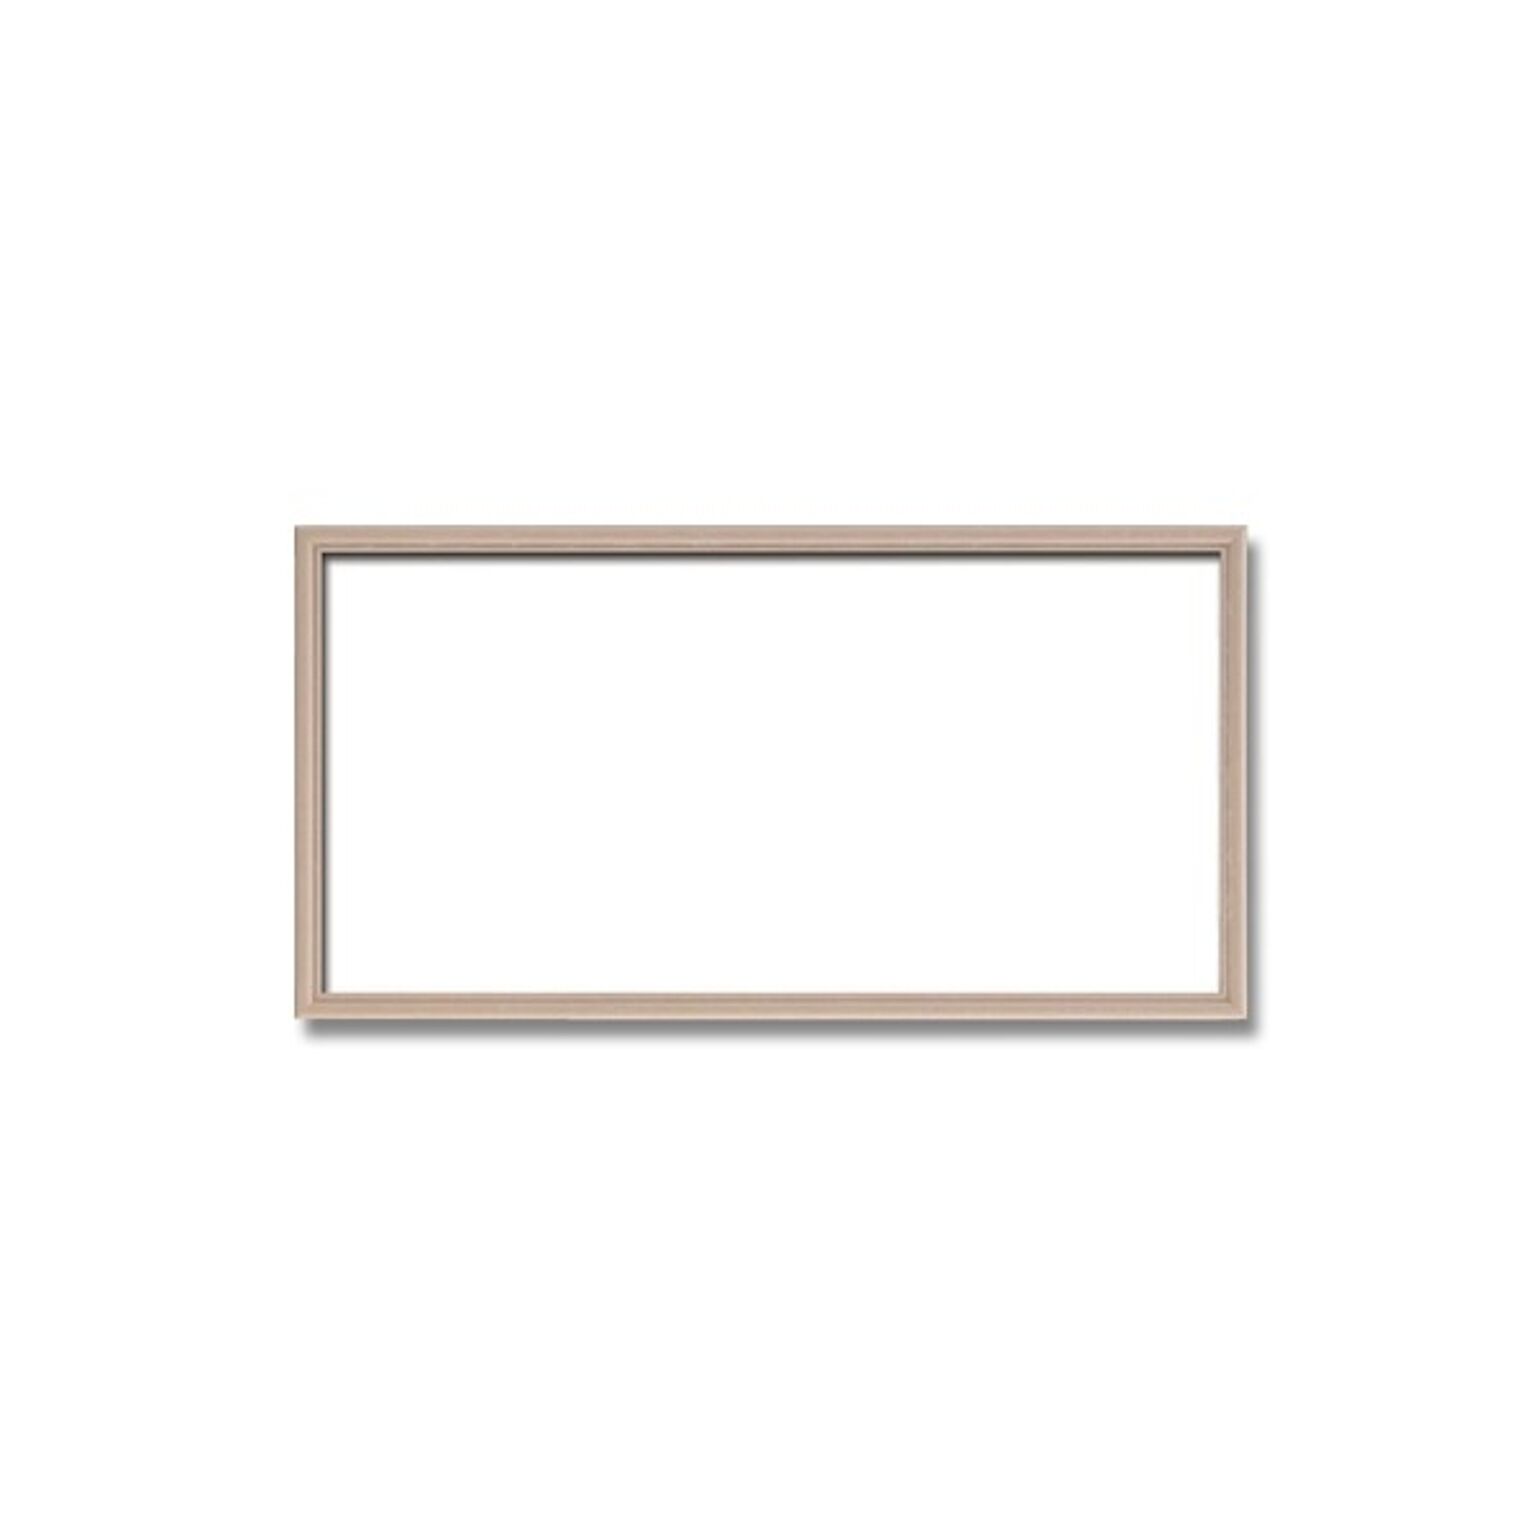 【長方形額】木製額 縦横兼用額 カラー4色展開 ■カラー長方形額（400×250mm） ピンクベージュ